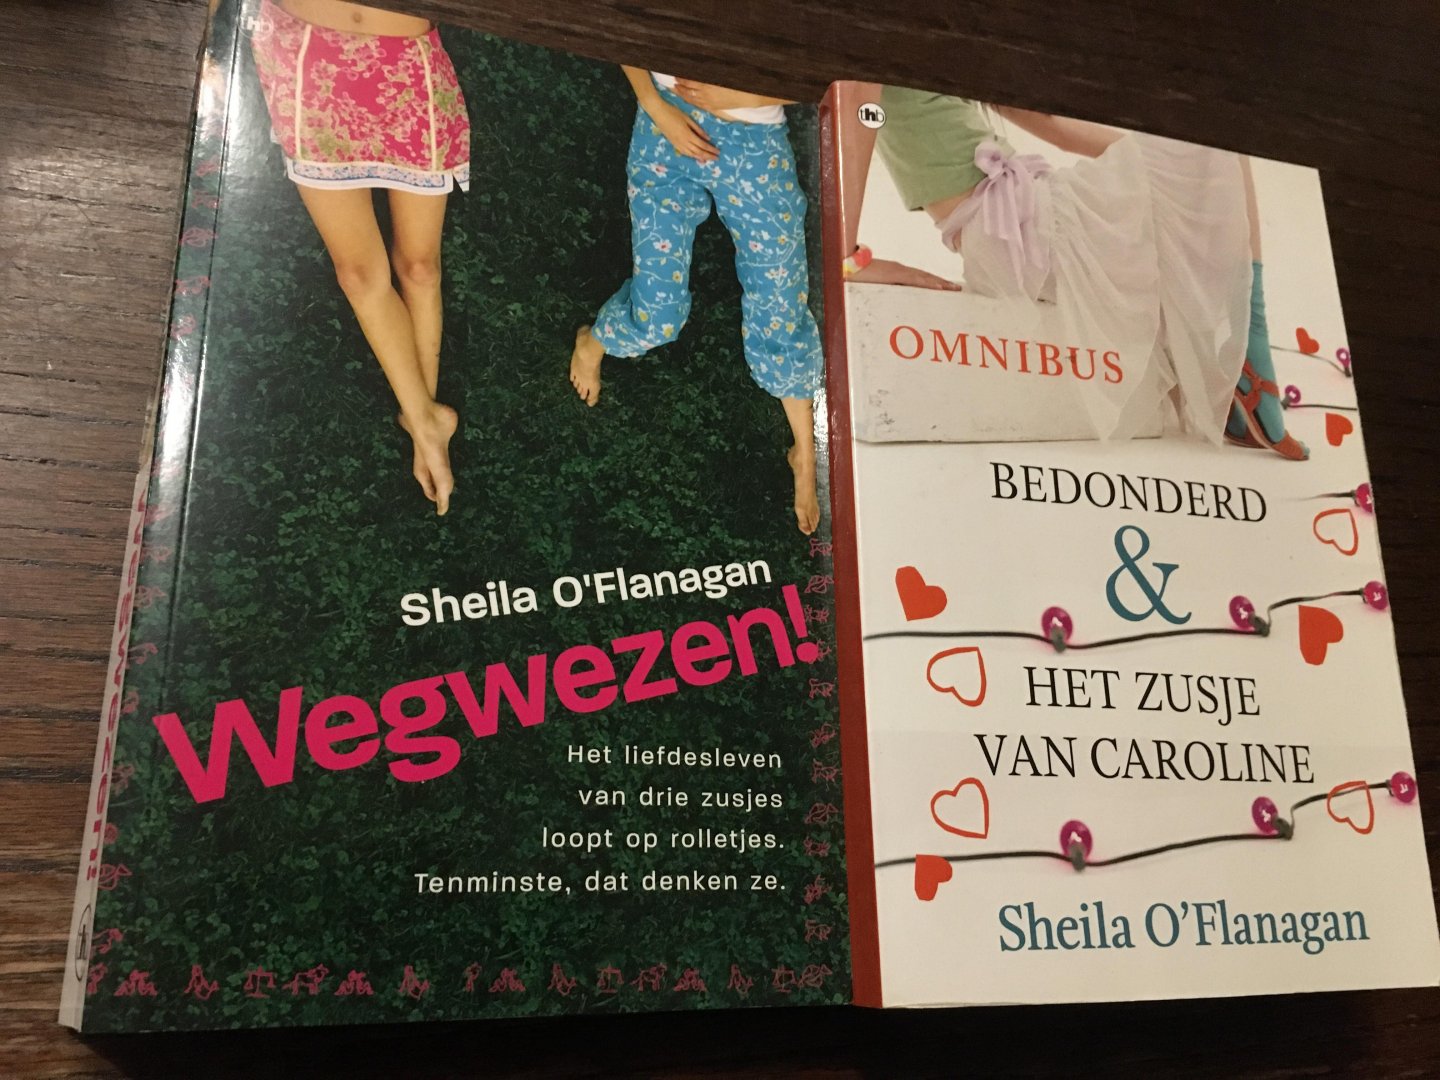 O'Flanagan, Sheila - Twee boeken van O’Flanagan; Wegwezen, Bedonderd & Het zusje van Caroline